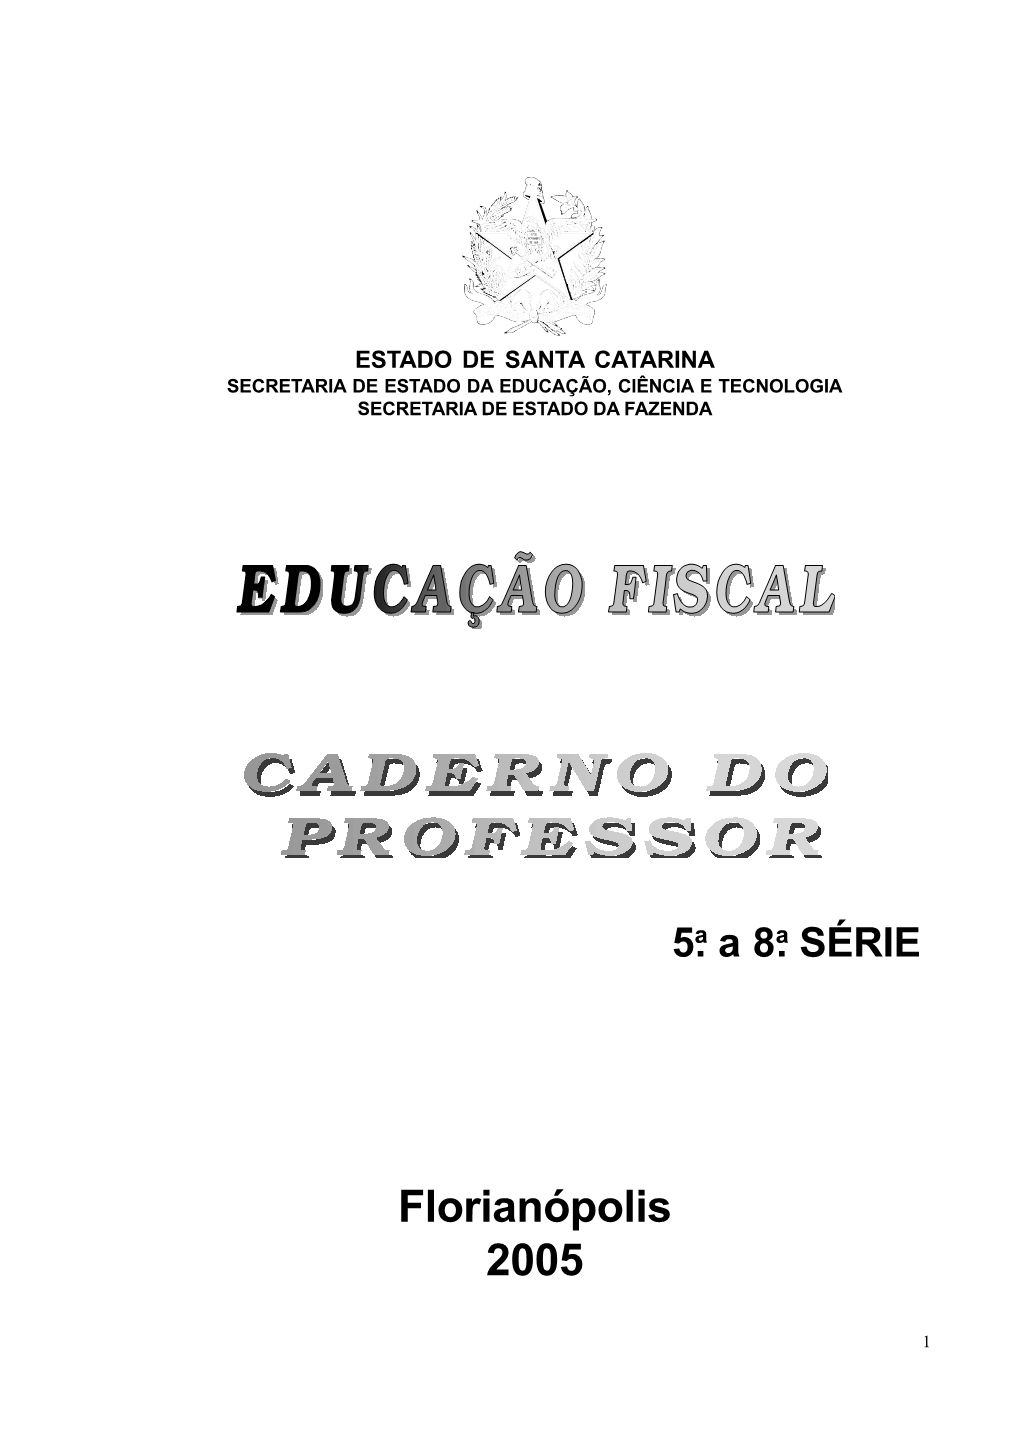 Florianópolis 2005